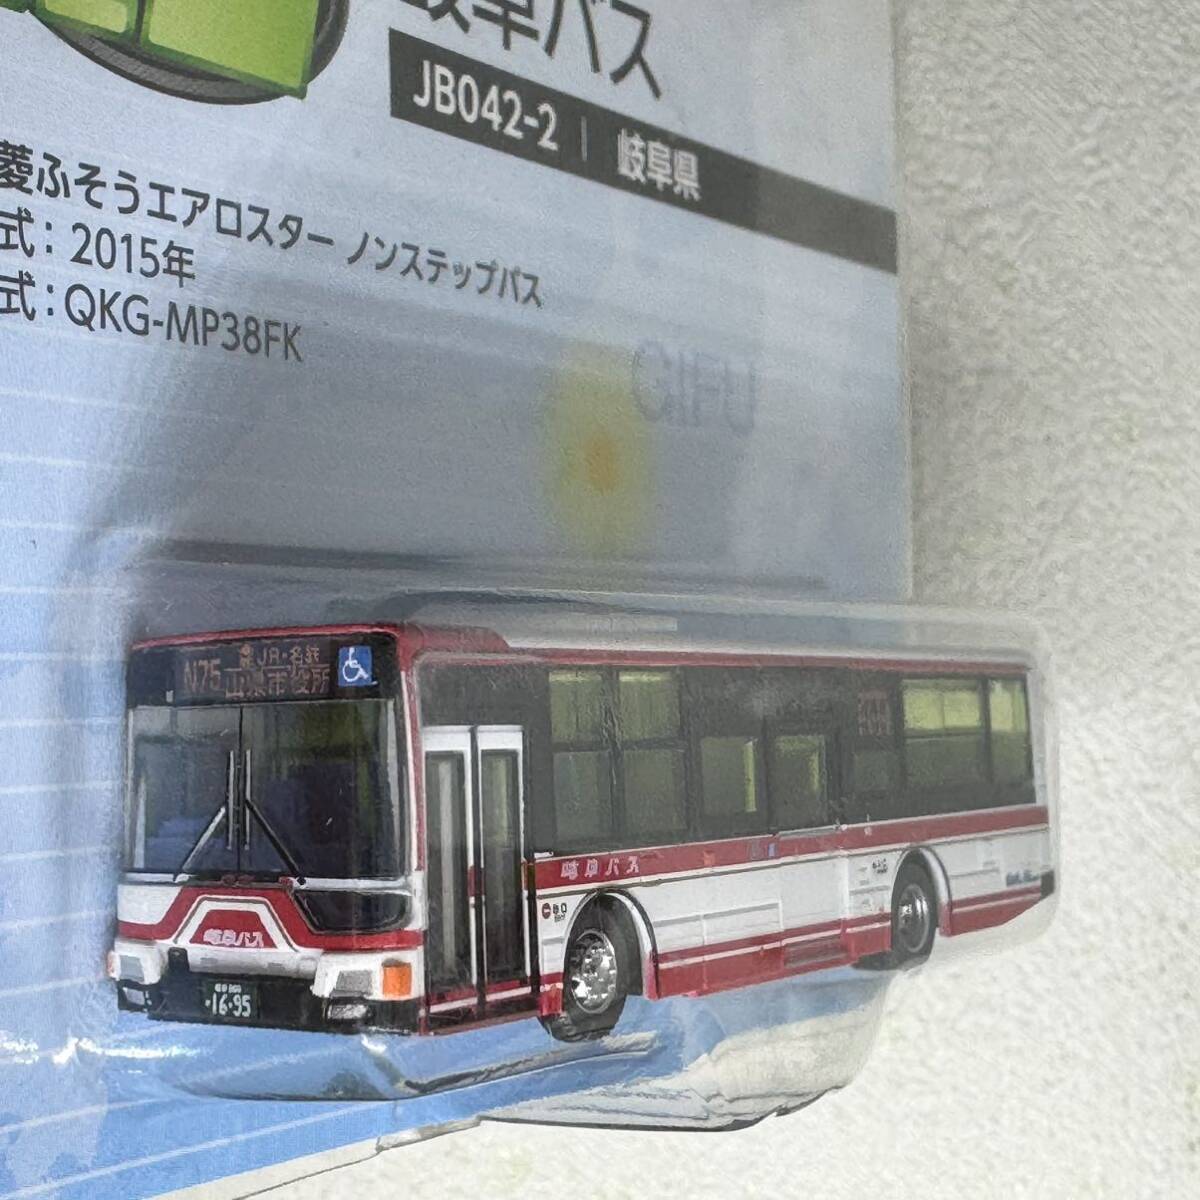 バスコレクション 全国バスコレ JB042-2 岐阜バス 三菱ふそう エアロスターの画像2